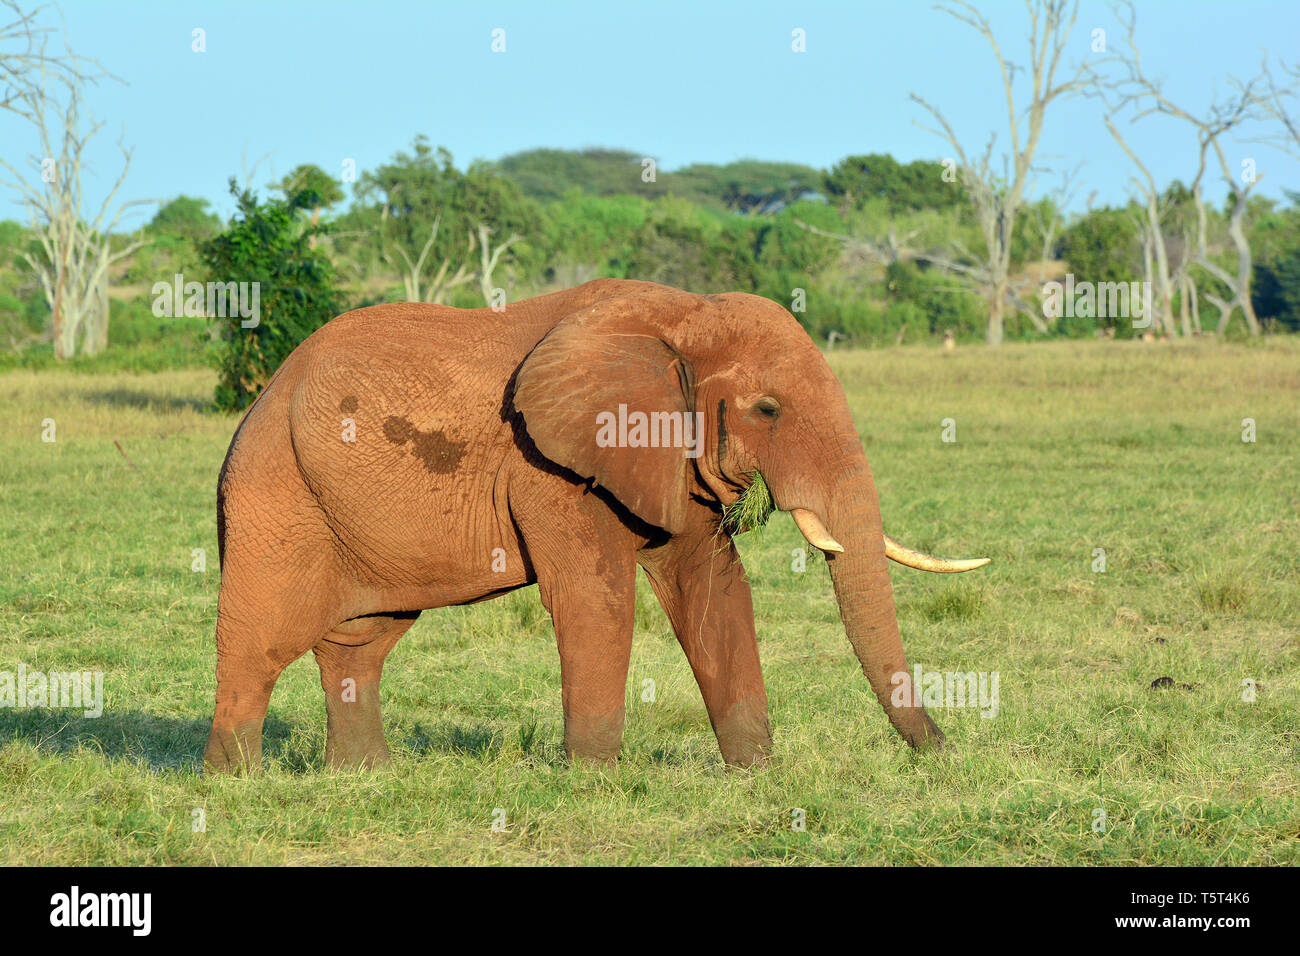 Loxodonta africana, Afrikanischer Buschelefant, Afrikanischer Steppenelefant, Afrikanischer Elefant, afrikai elefánt, African savanna elephant Stock Photo